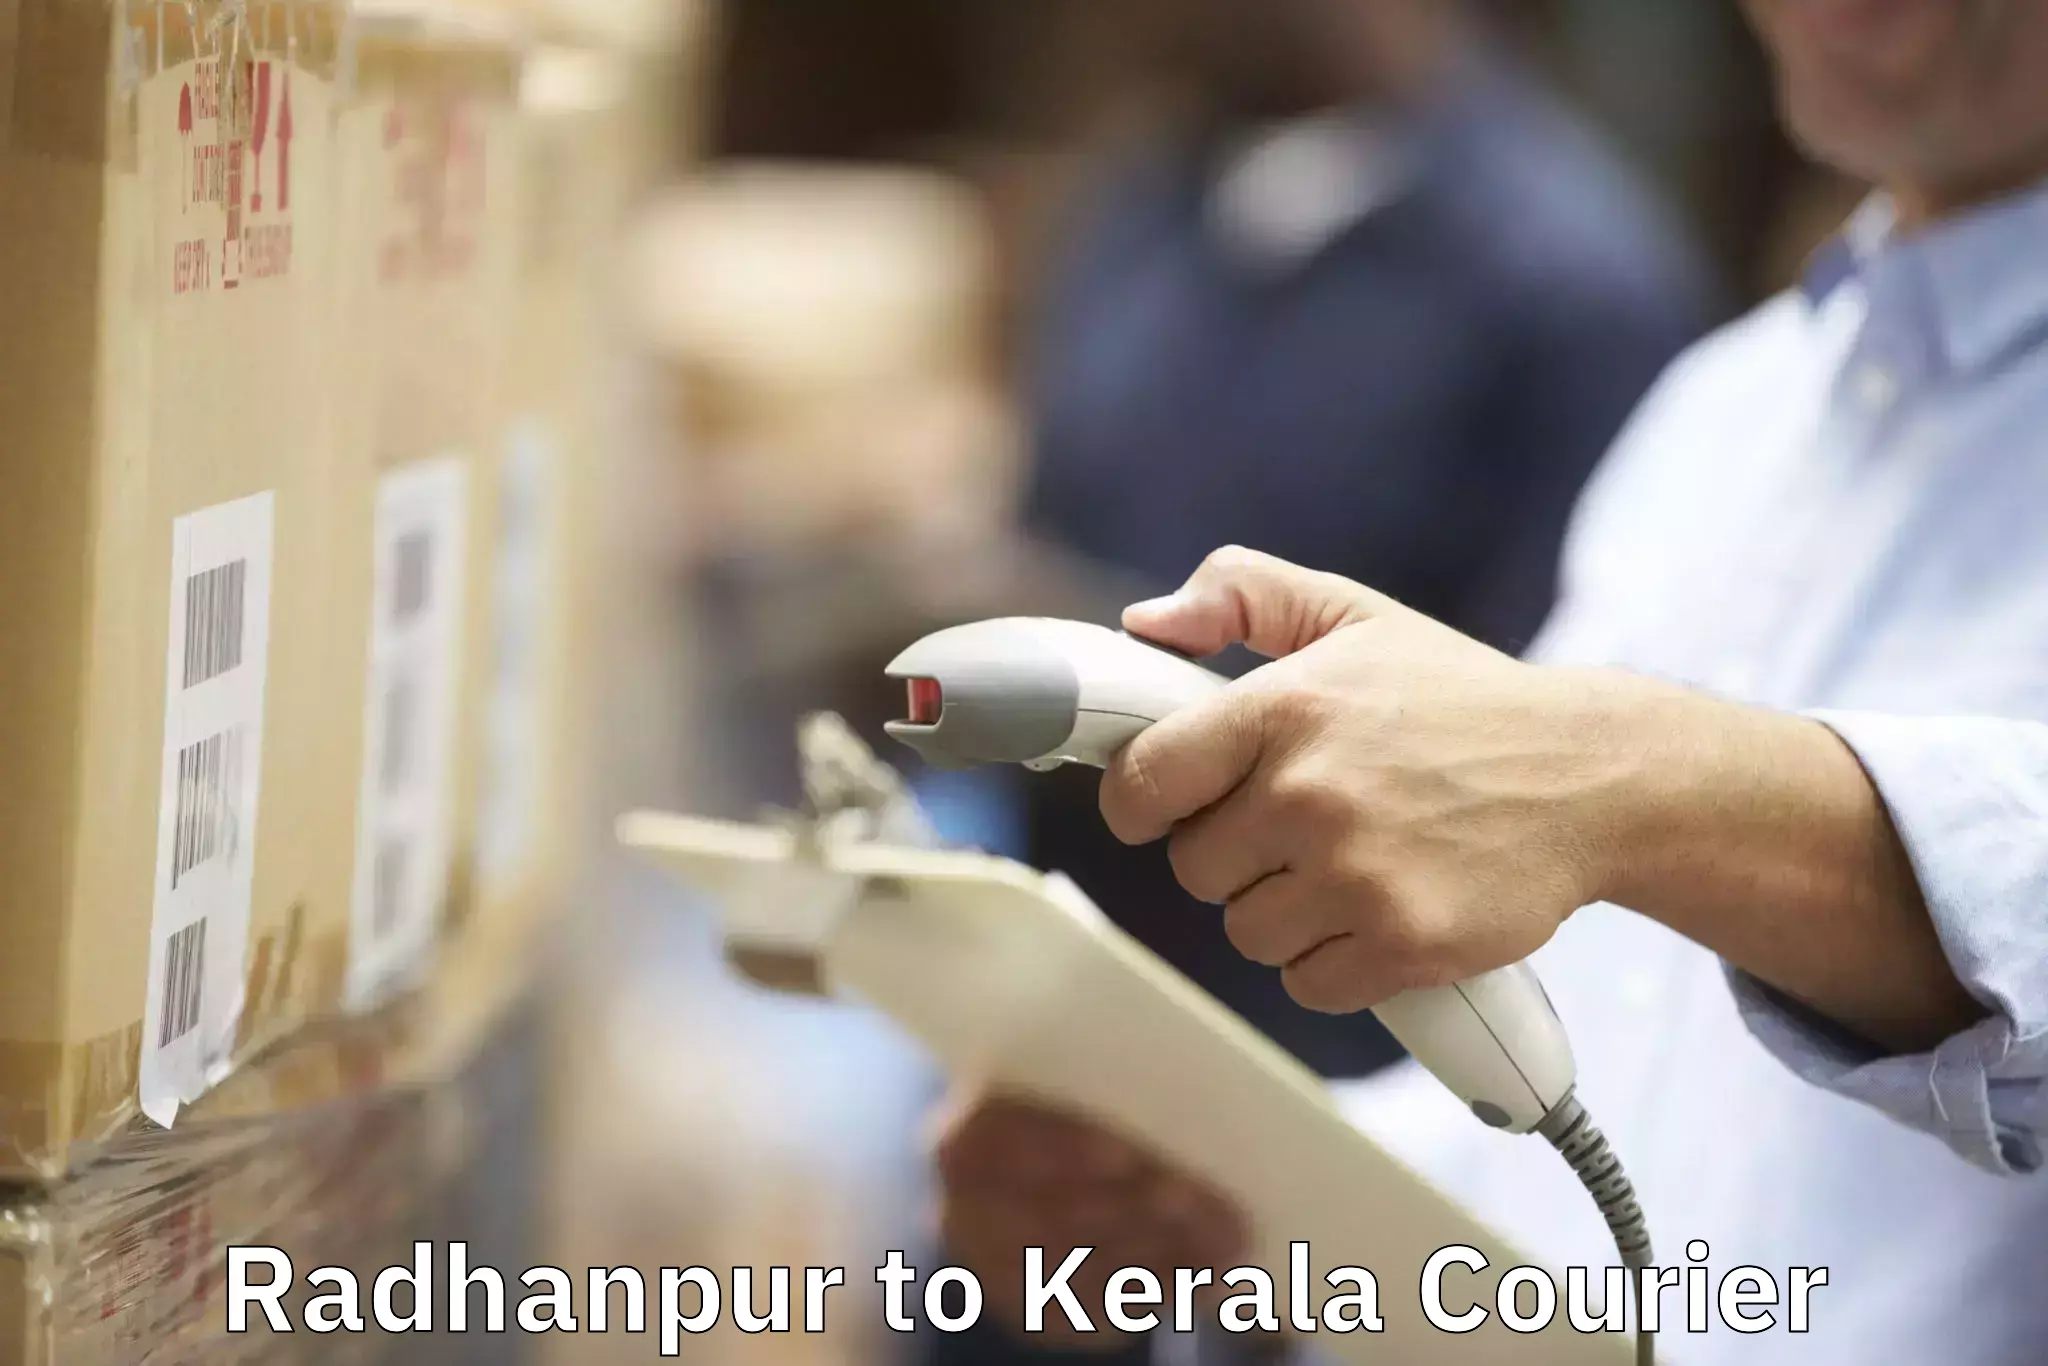 Furniture moving experts Radhanpur to Kerala